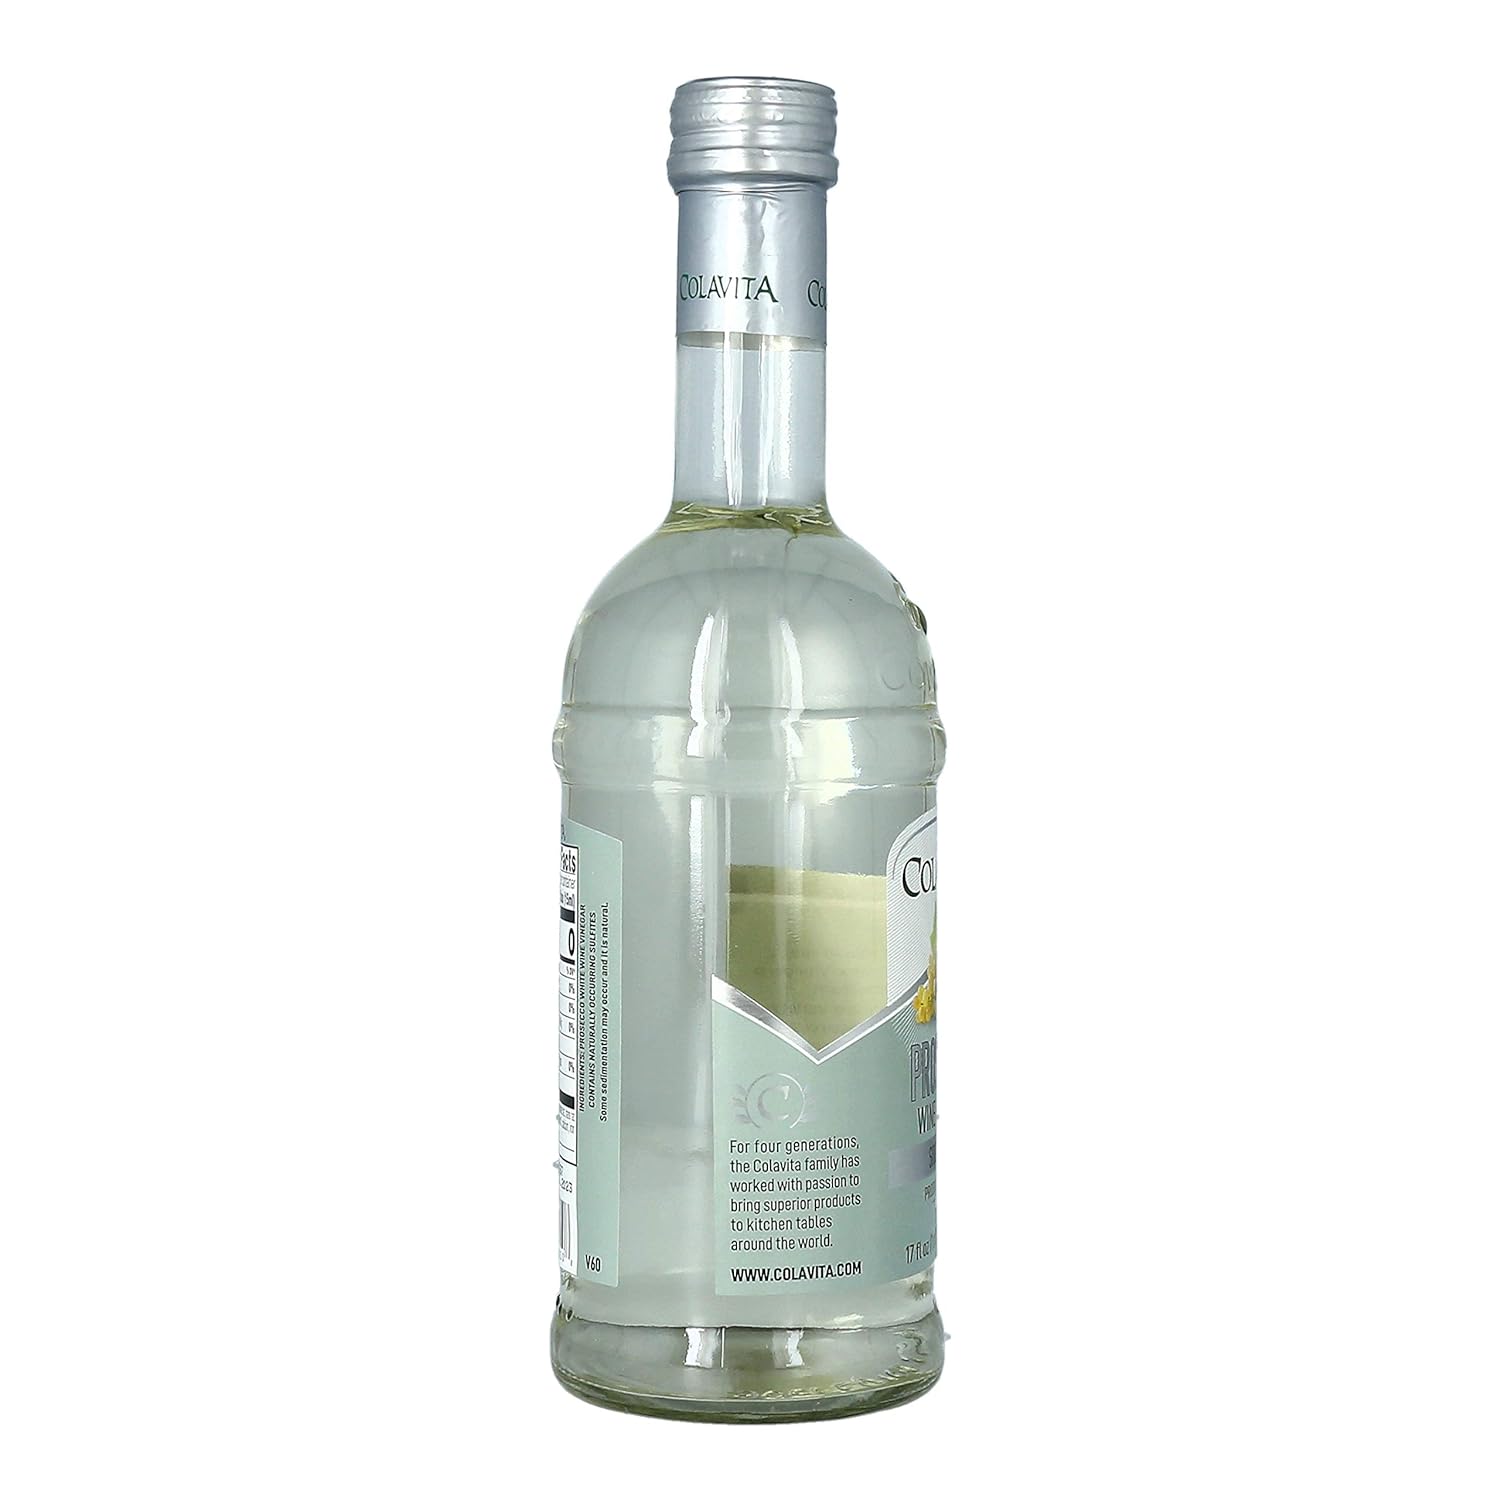 Colavita Prosecco White Wine Vinegar, Special, 34 Fl Oz